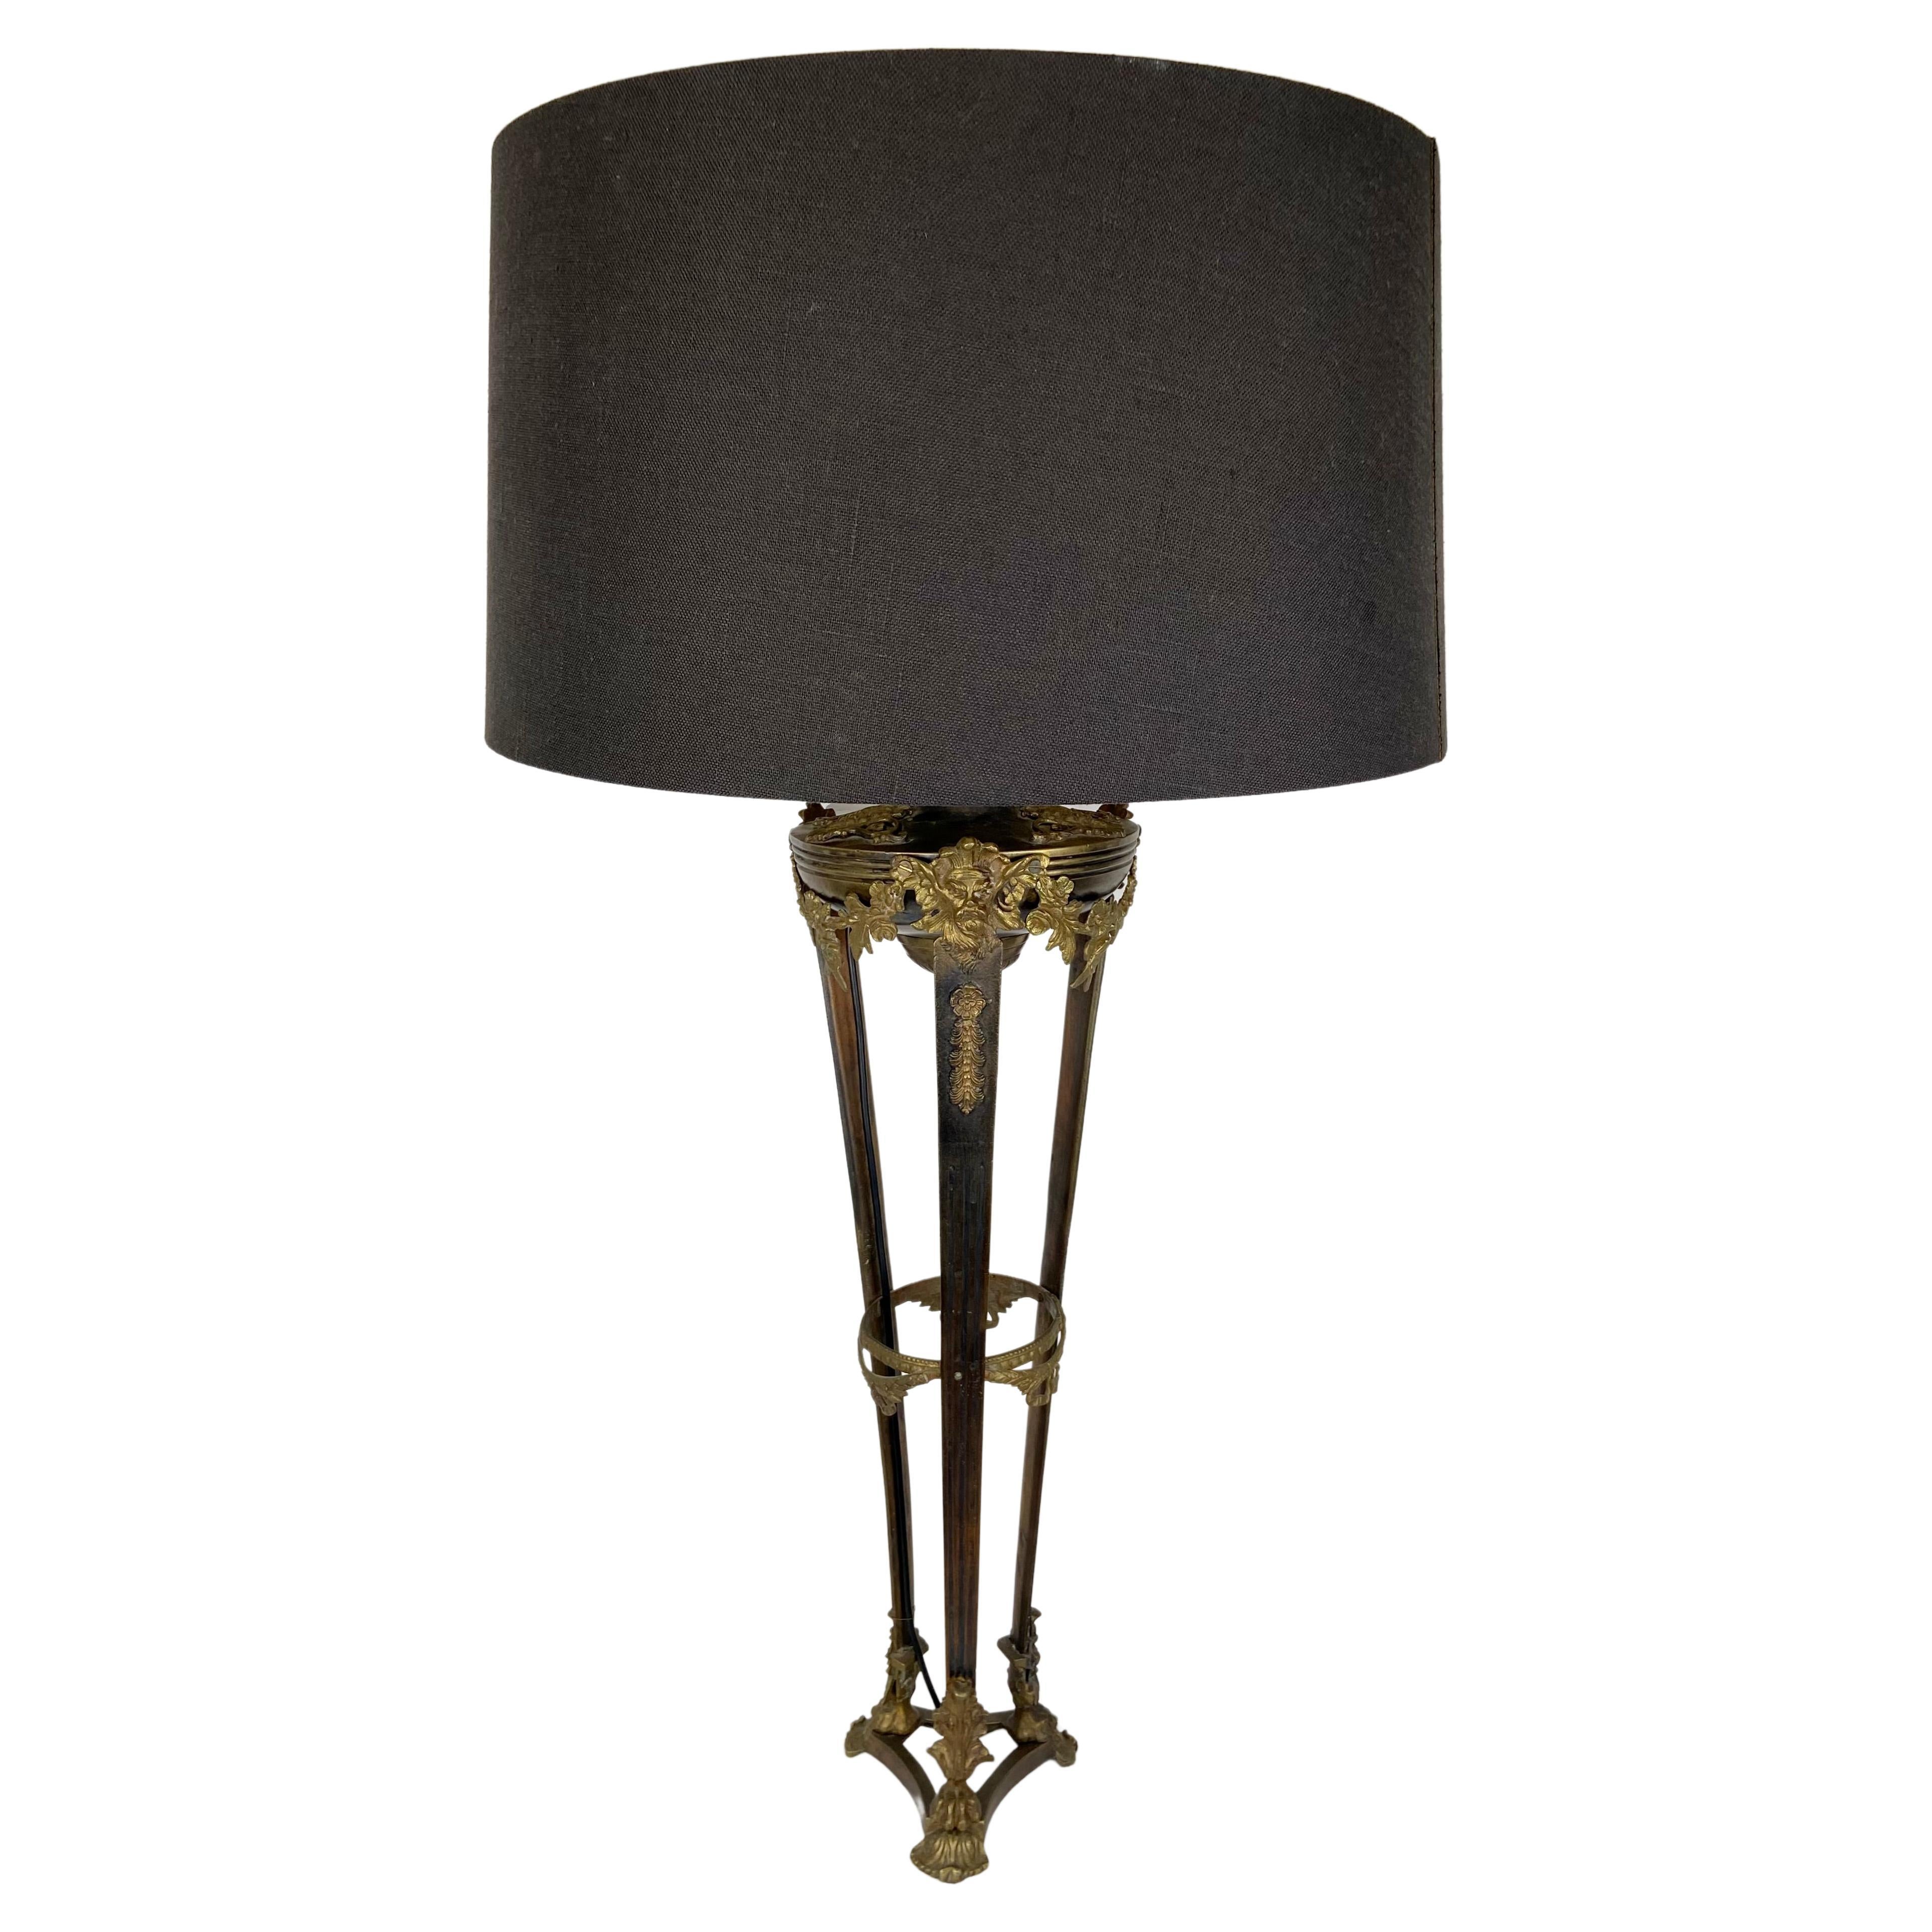 Italian table lamp.